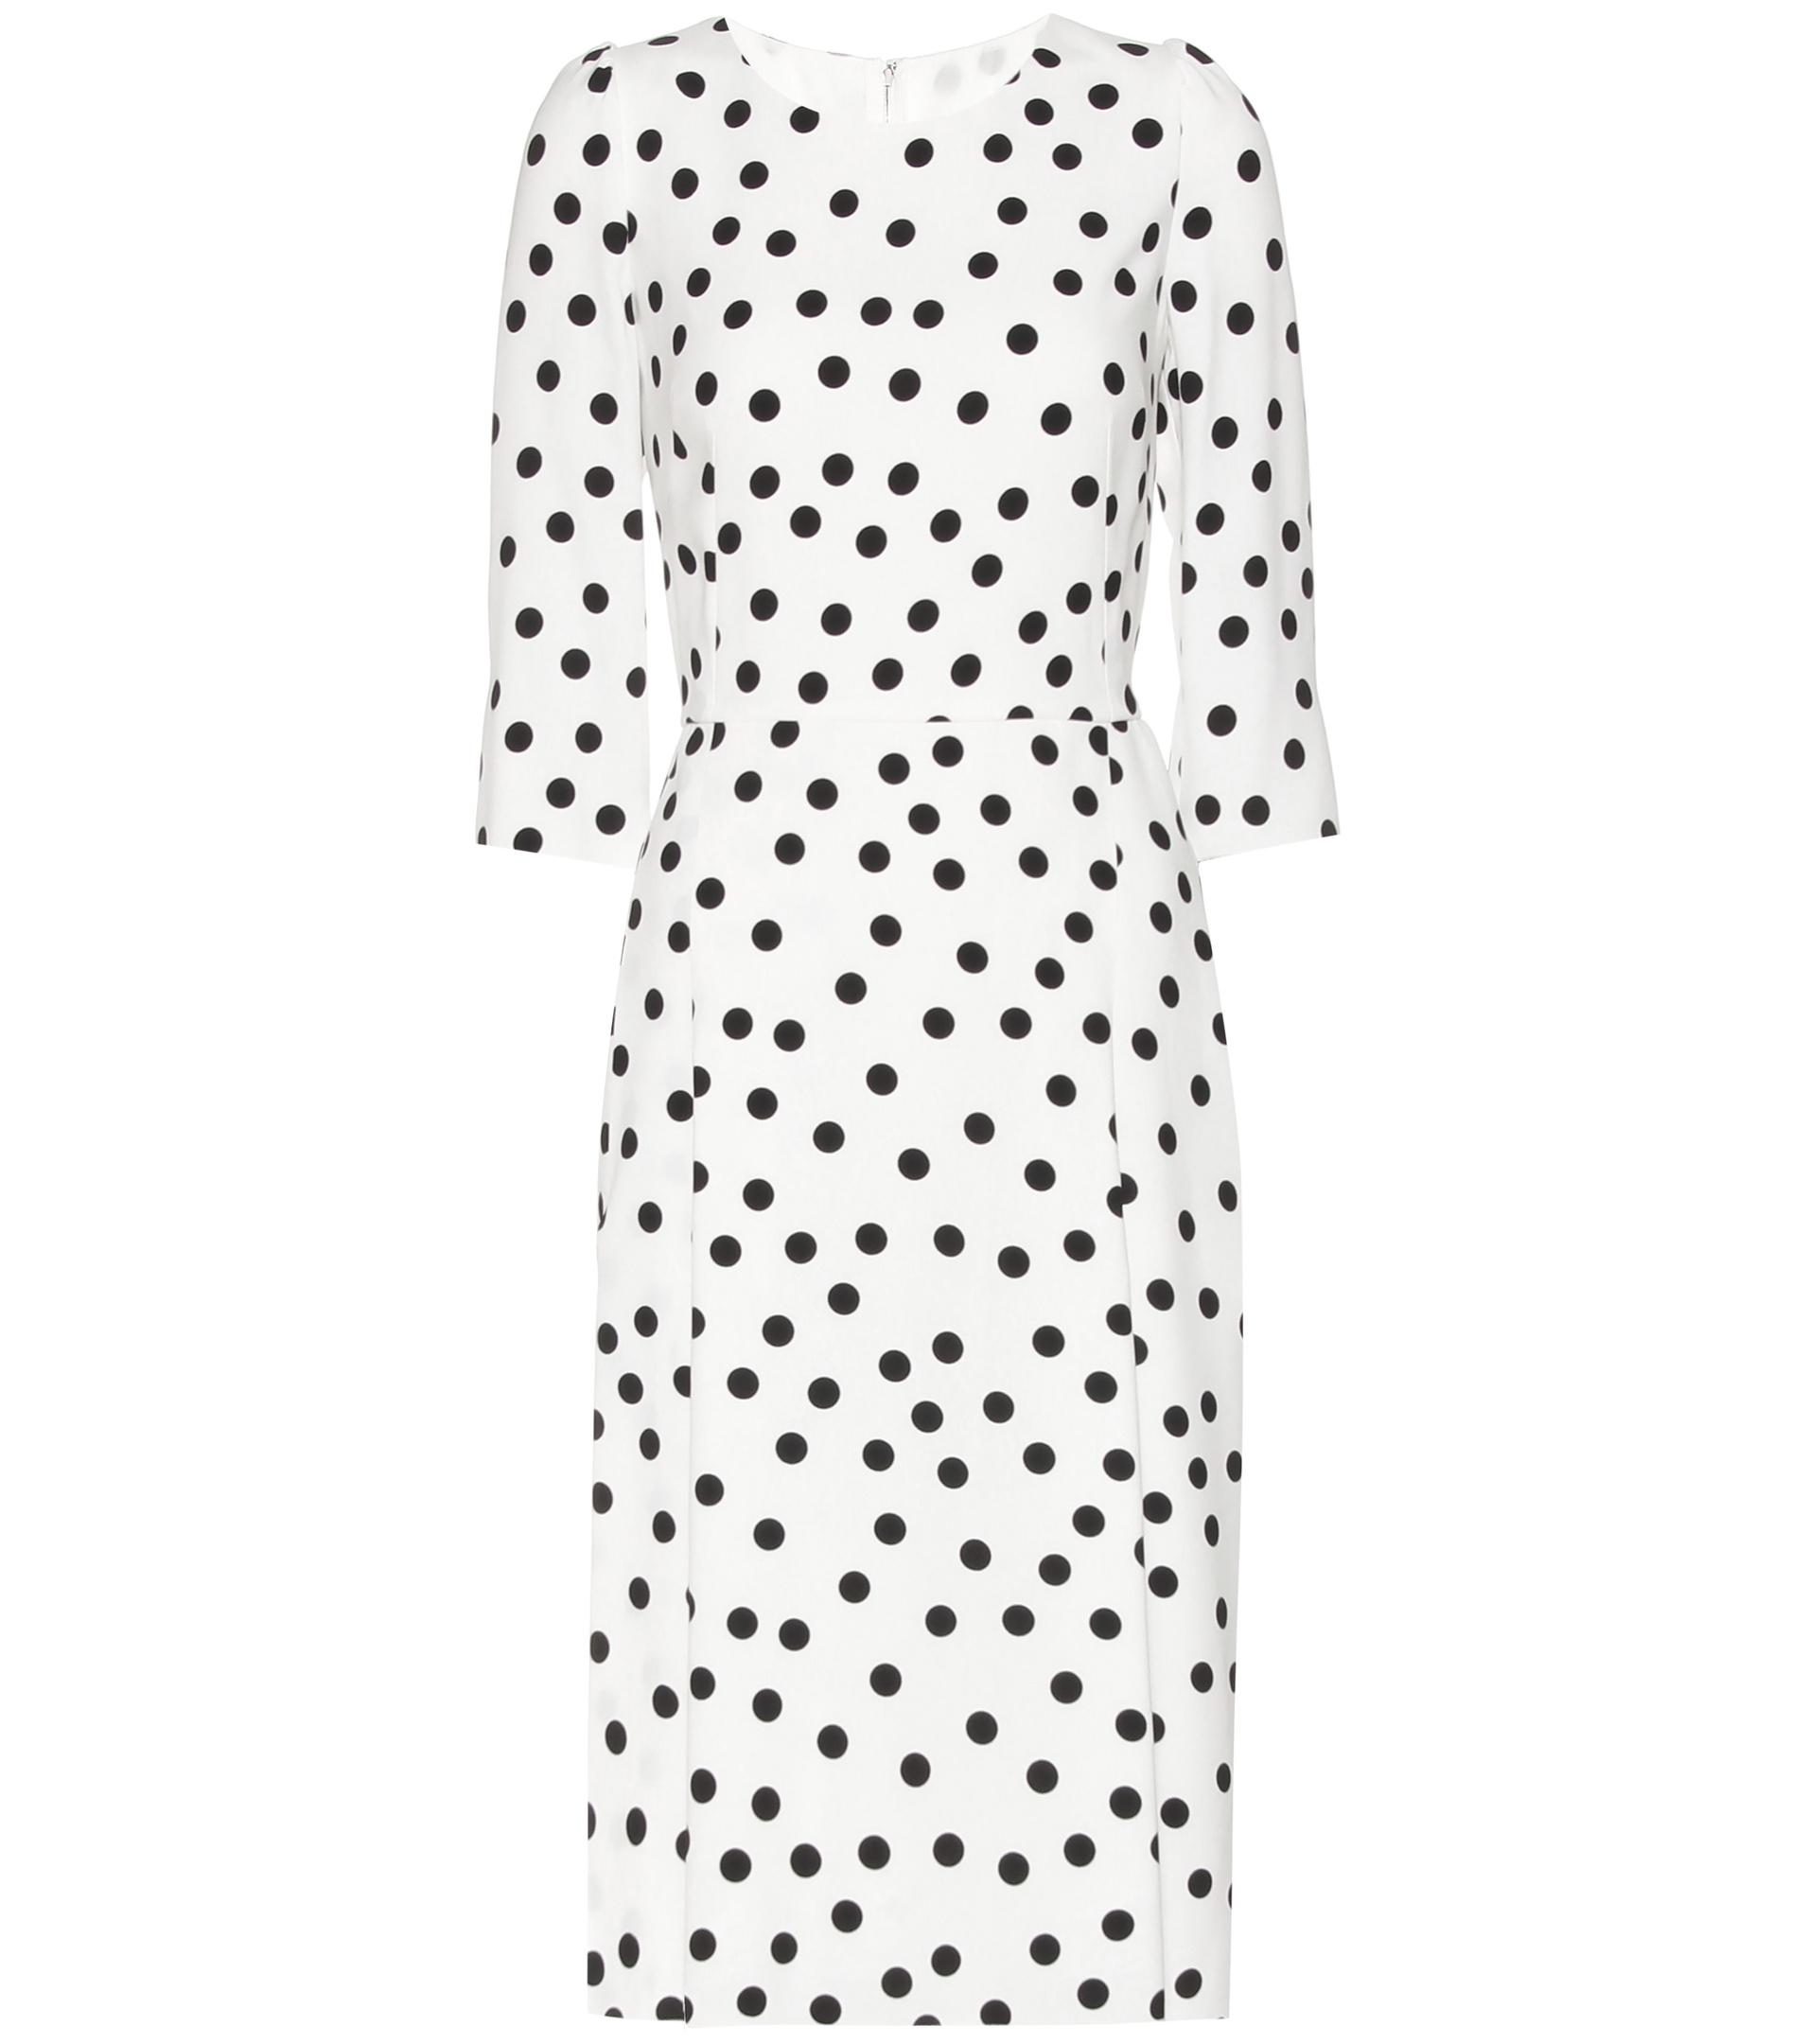 Lyst - Dolce & Gabbana Polka-dot Dress in White - Save 21%